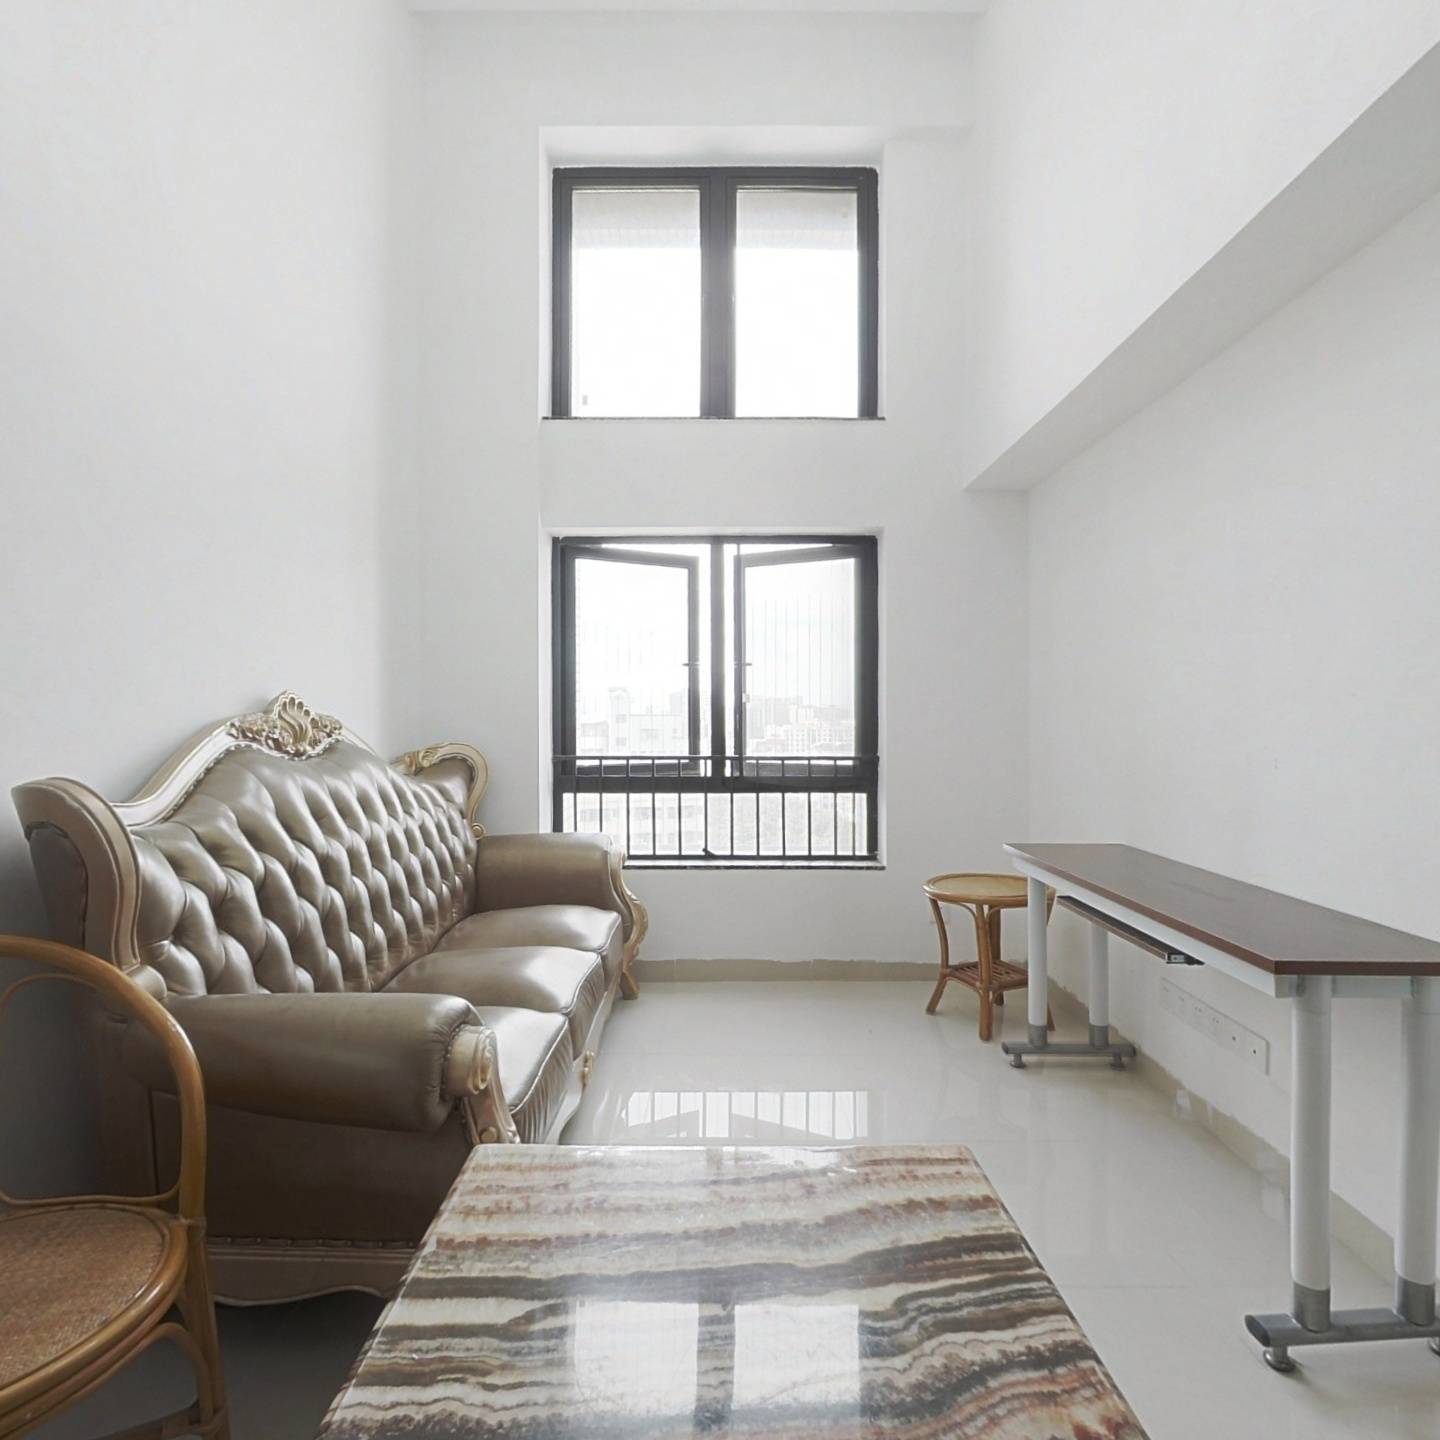 华盛观荟 精装复式公寓 在深圳给您一个温馨的家